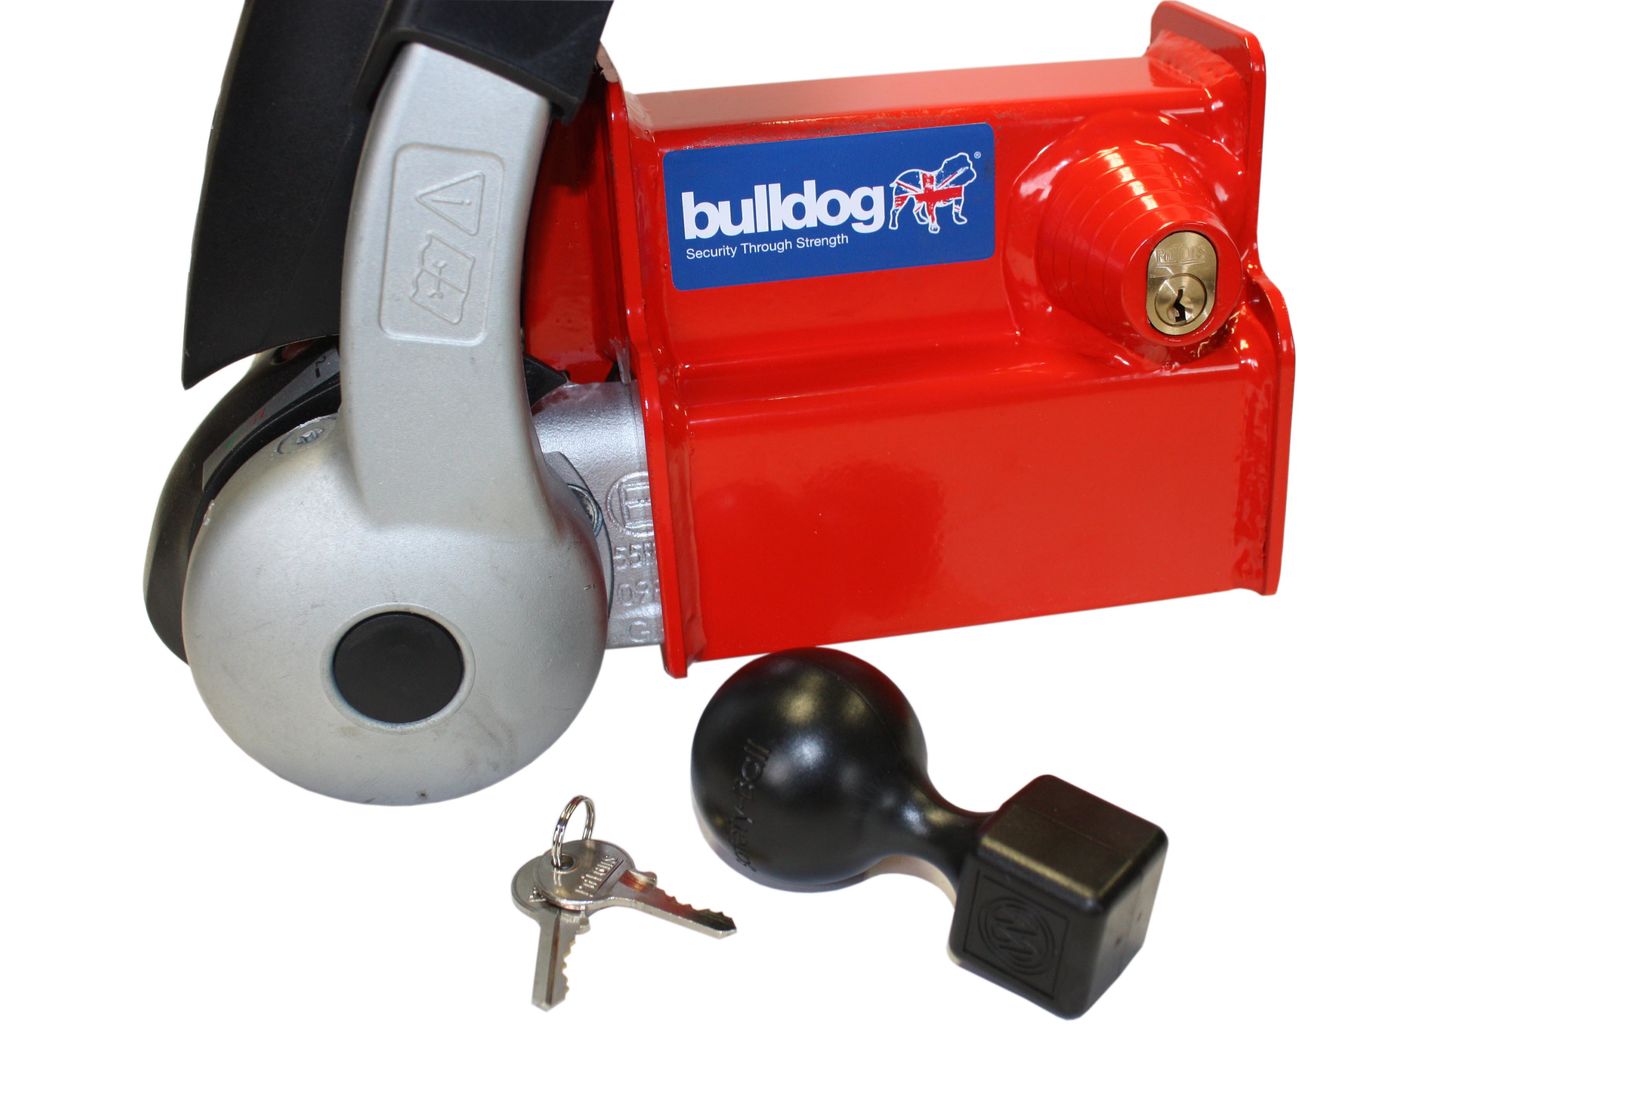 Bulldog Budget GA95 Hitchllock